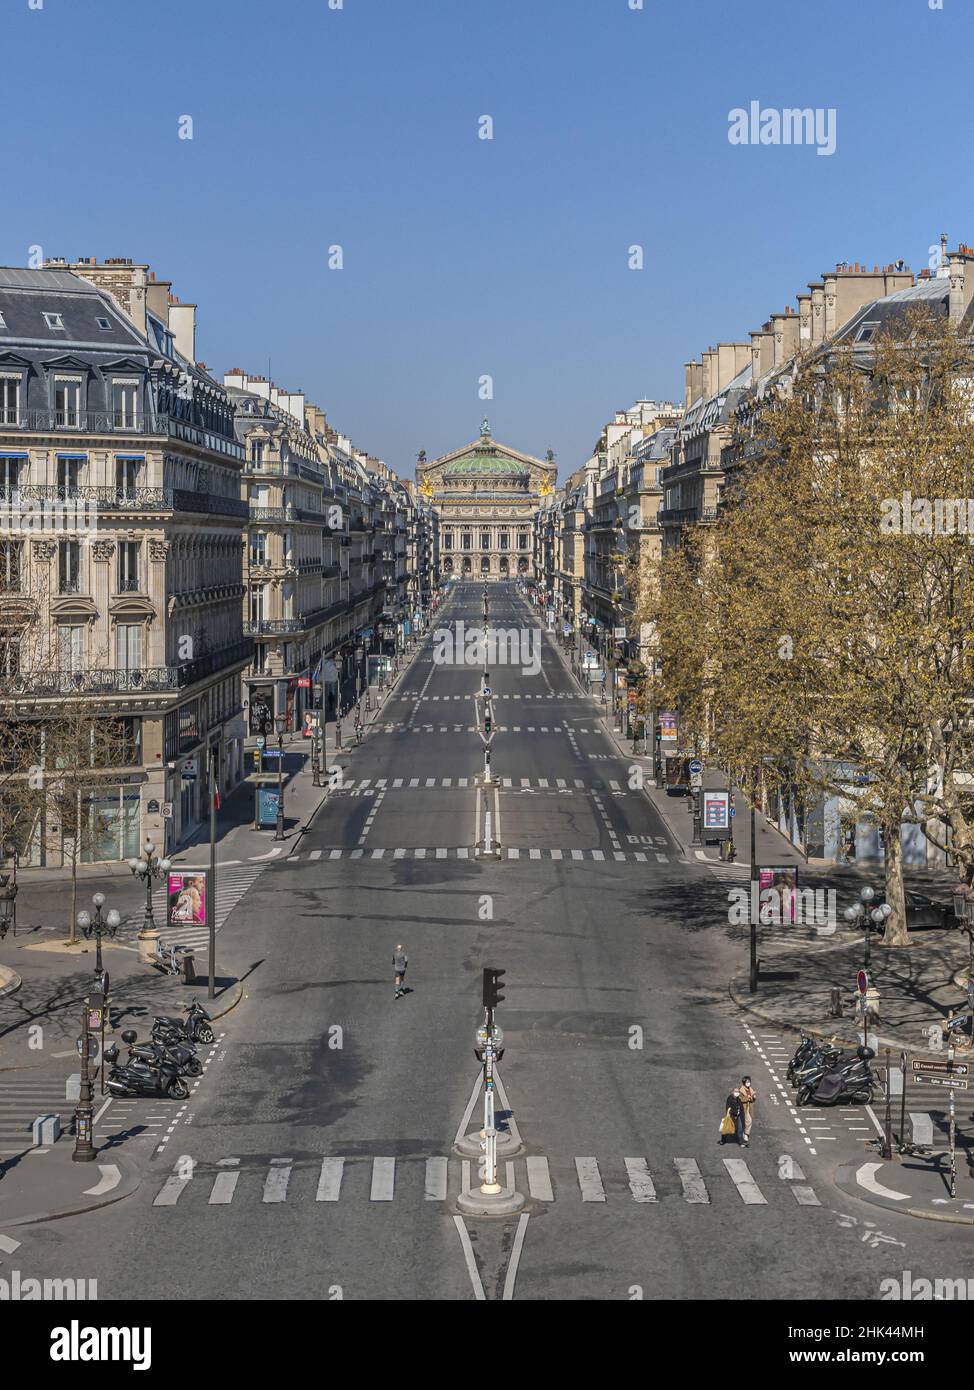 Francia - Ile de France - Parigi (75): Terza settimana di confino a causa dell'epidemia di Coronavirus. Qui, l'Avenue de l'Opéra visto da Place du Foto Stock